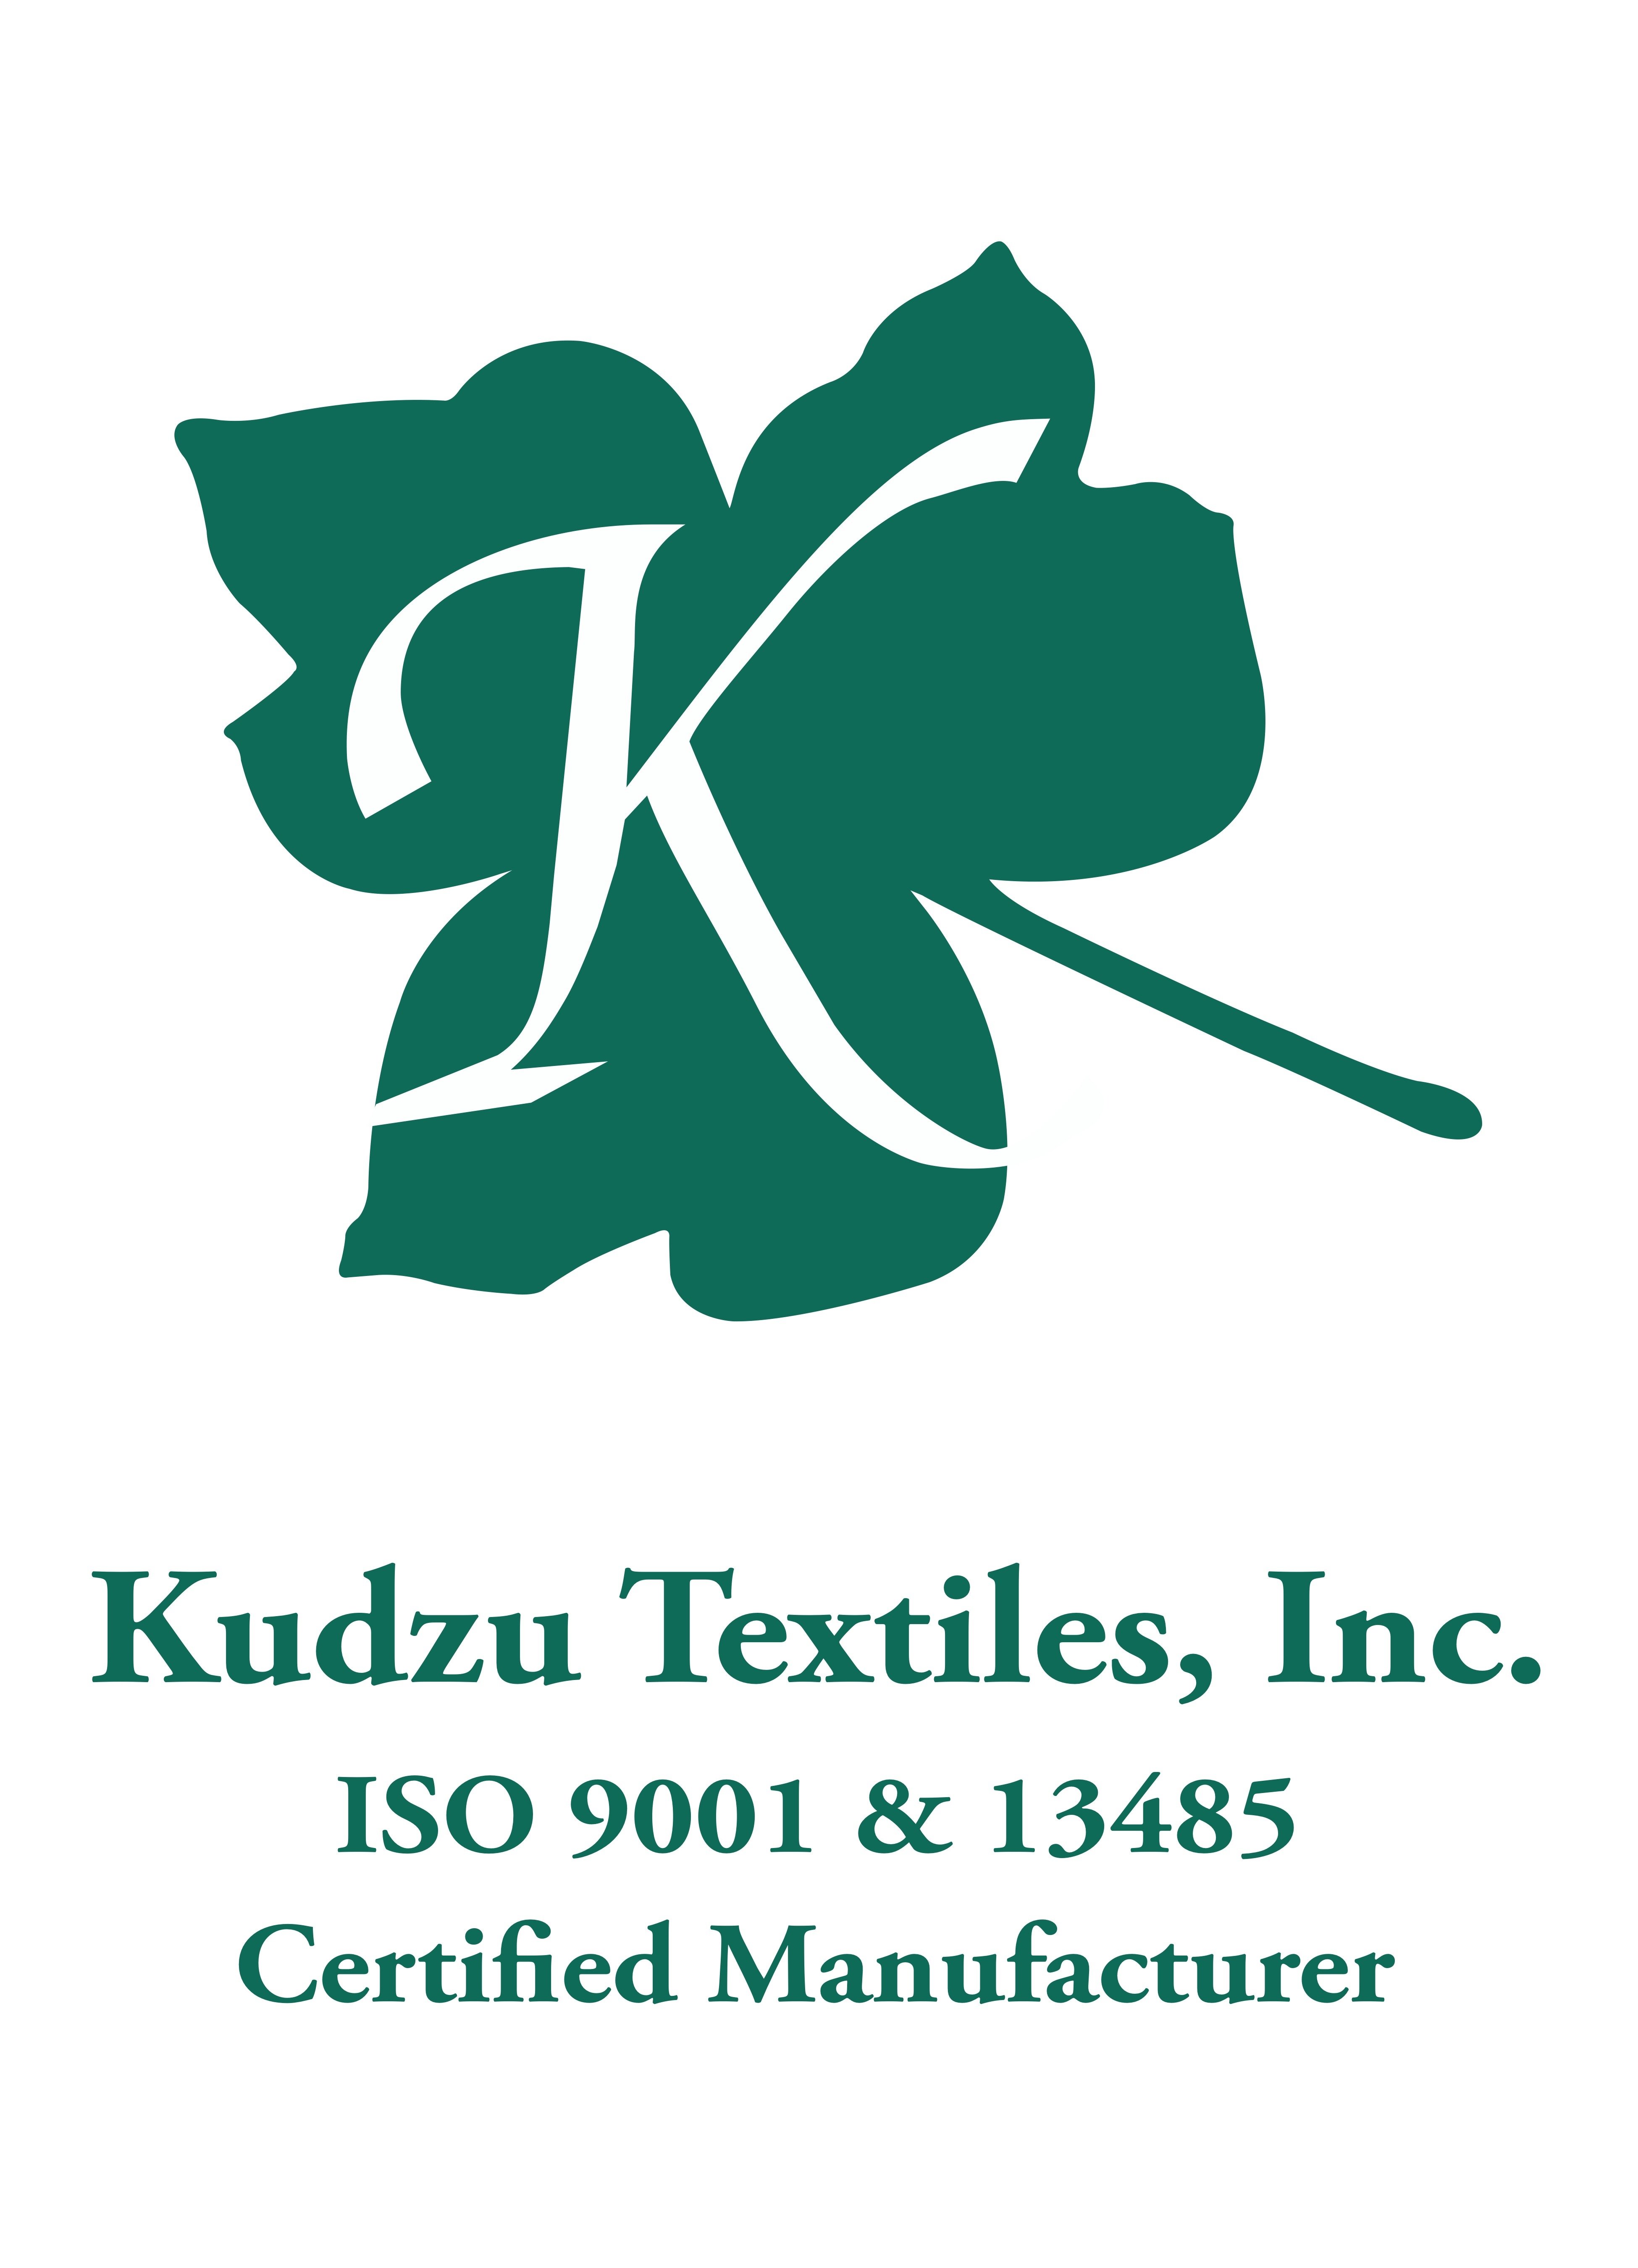 Kudzu Textiles